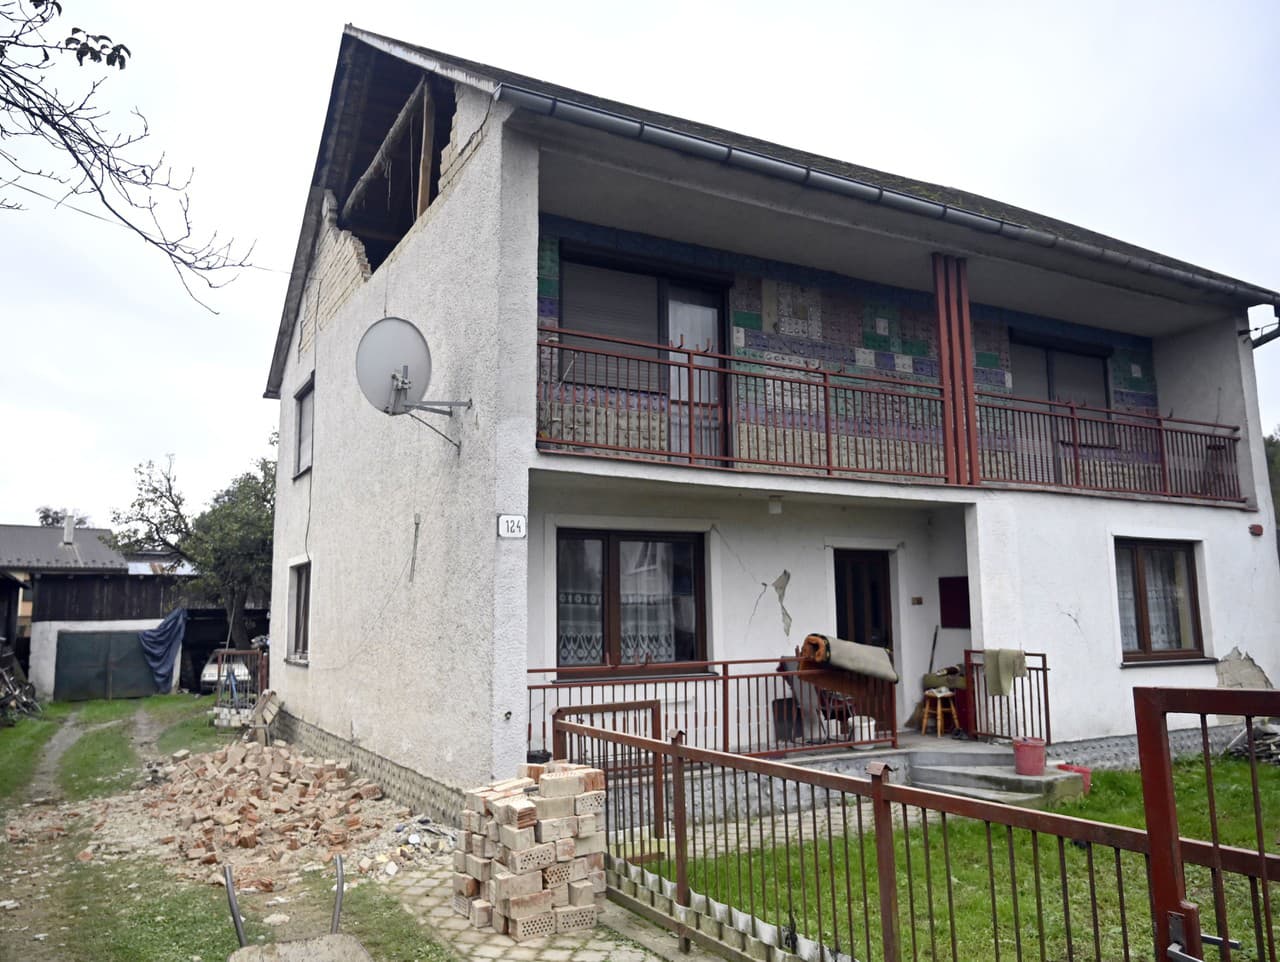 Zemetrasenie v Baškovciach poškodilo budovy